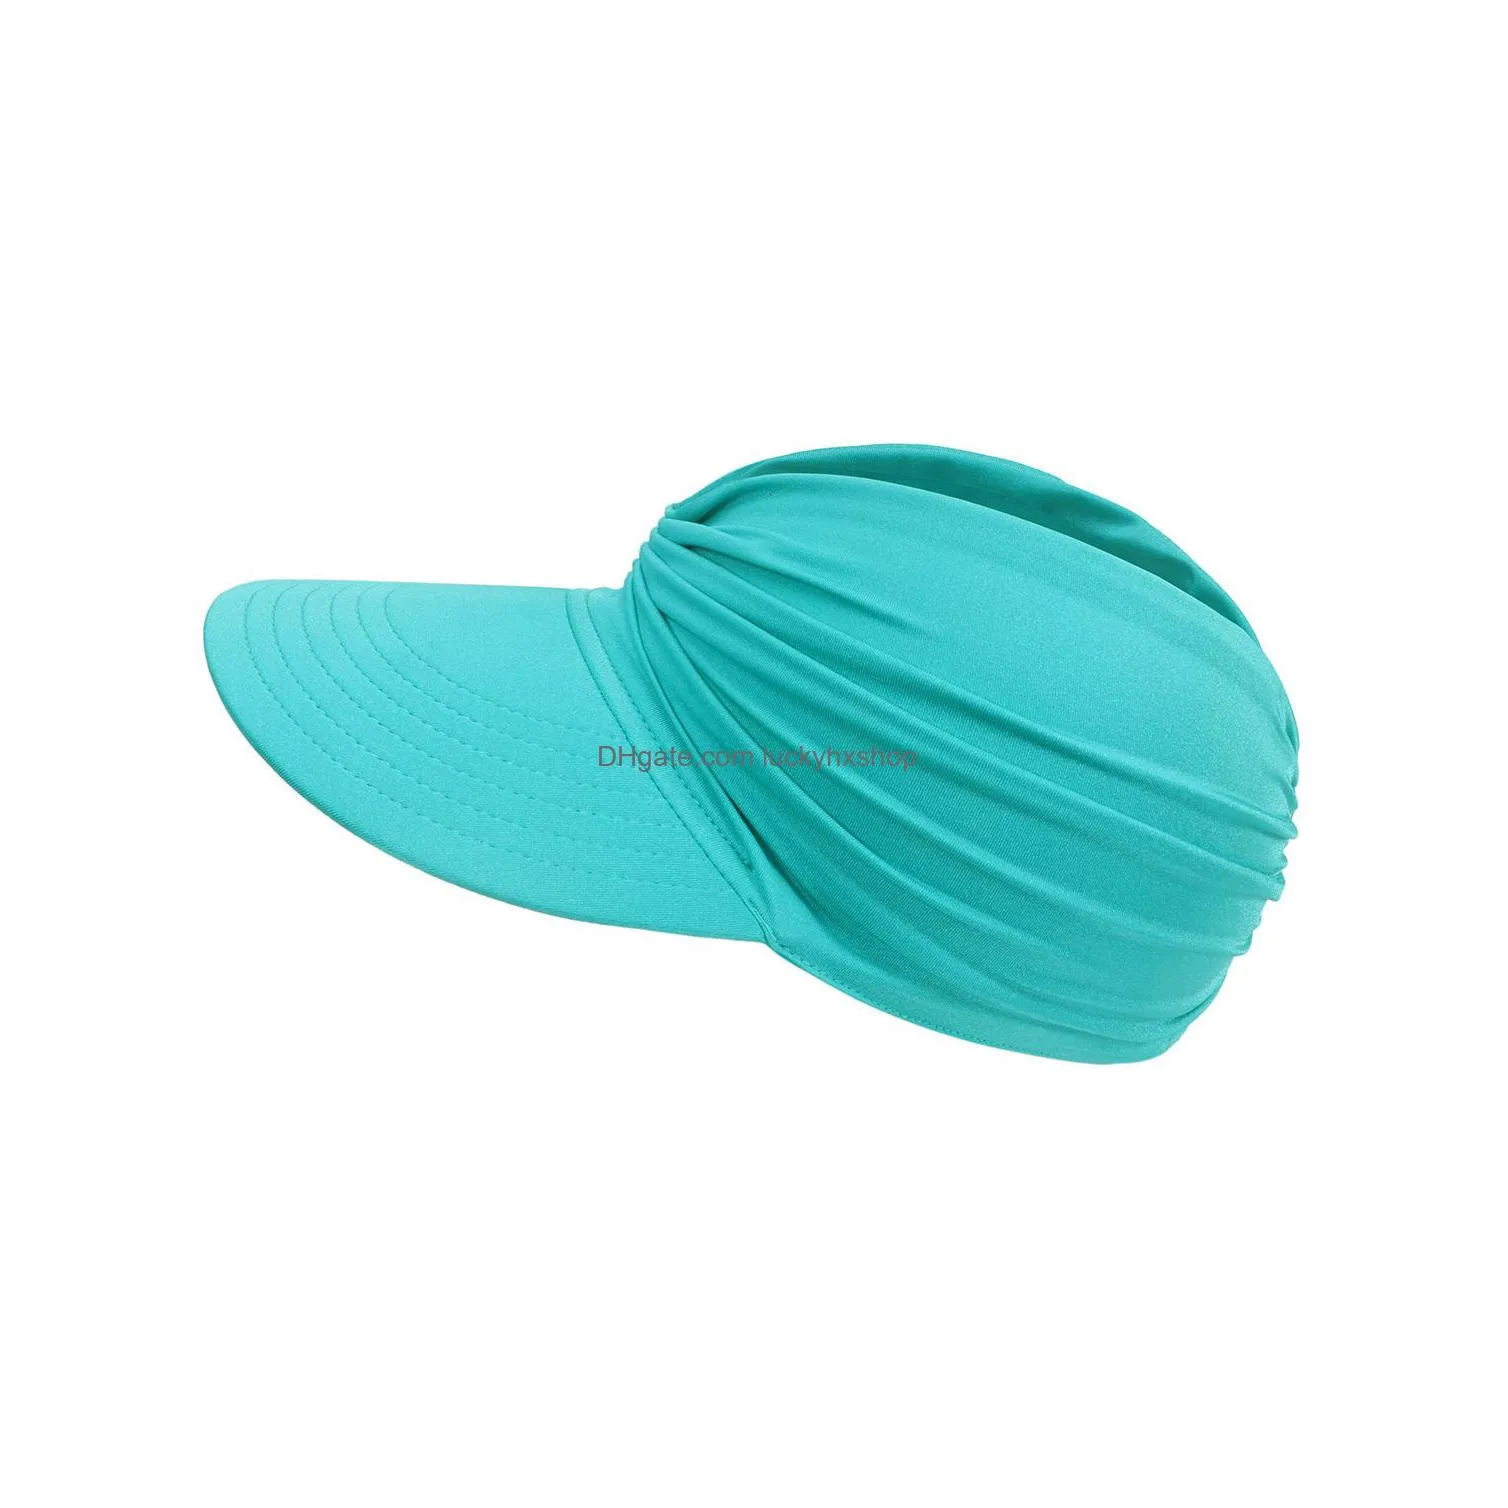 visors polyamide sun protect wide brim sunhat women outdoor summer hat open top hollow cap adult sun visor hat travel seaside beach hat